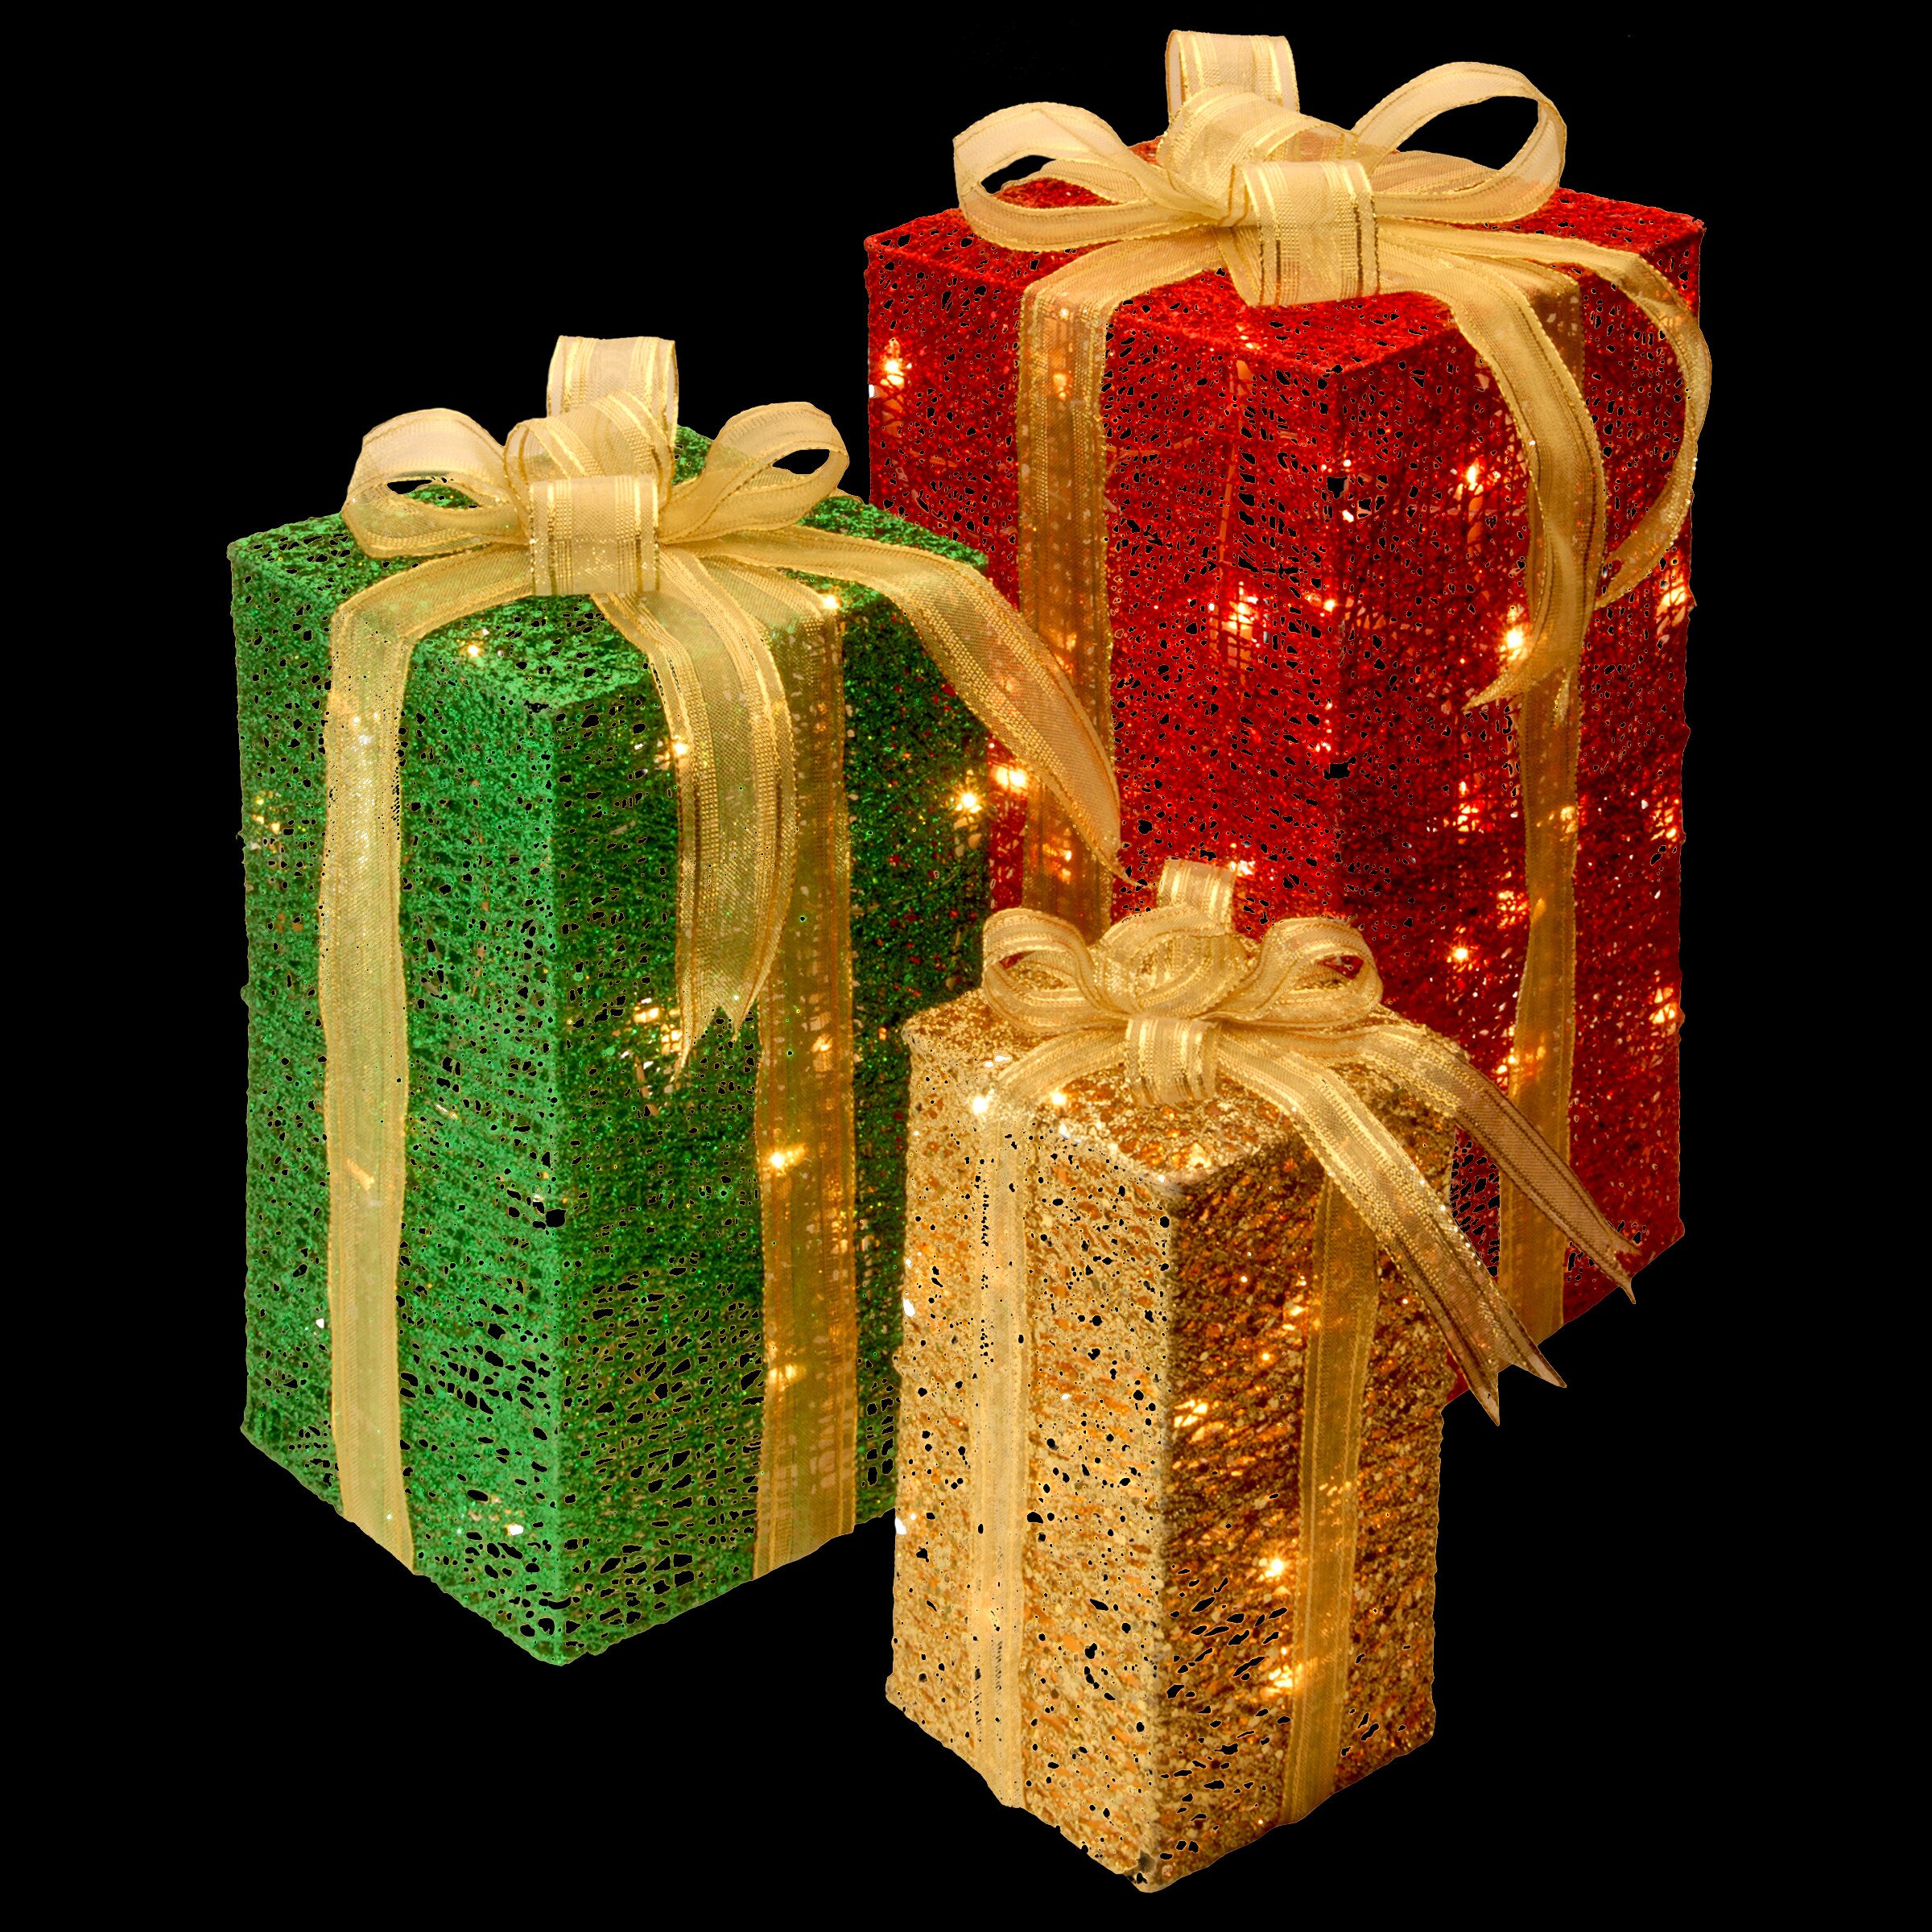 SunnyNeo - NC Gift Boxes